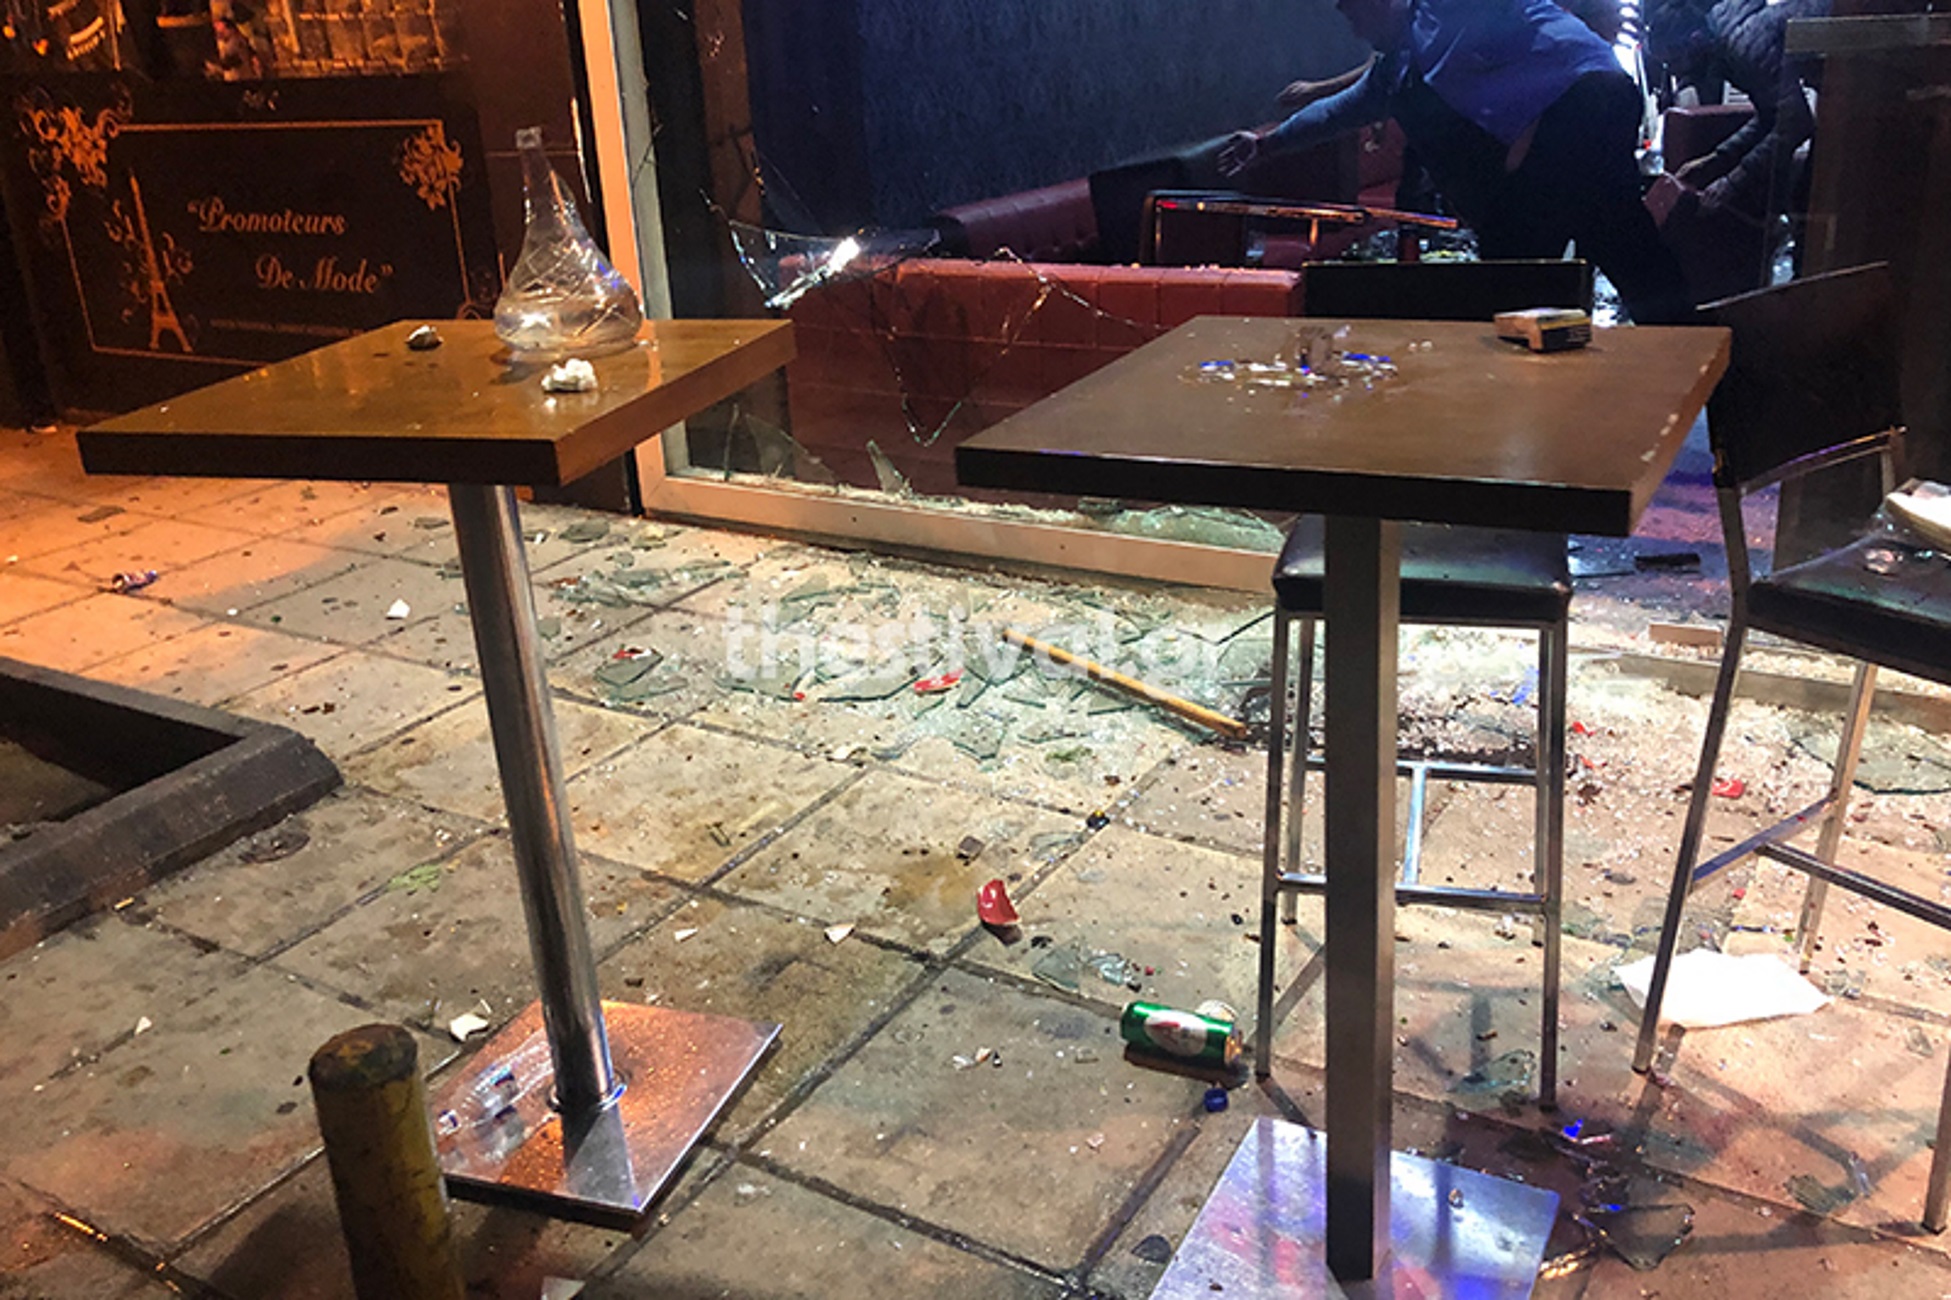 Θεσσαλονίκη: Ξύλο, ζημιές και τραυματίες σε μπαρ – Του έβρισε τη γυναίκα και έγινε ο κακός χαμός [pics, video]